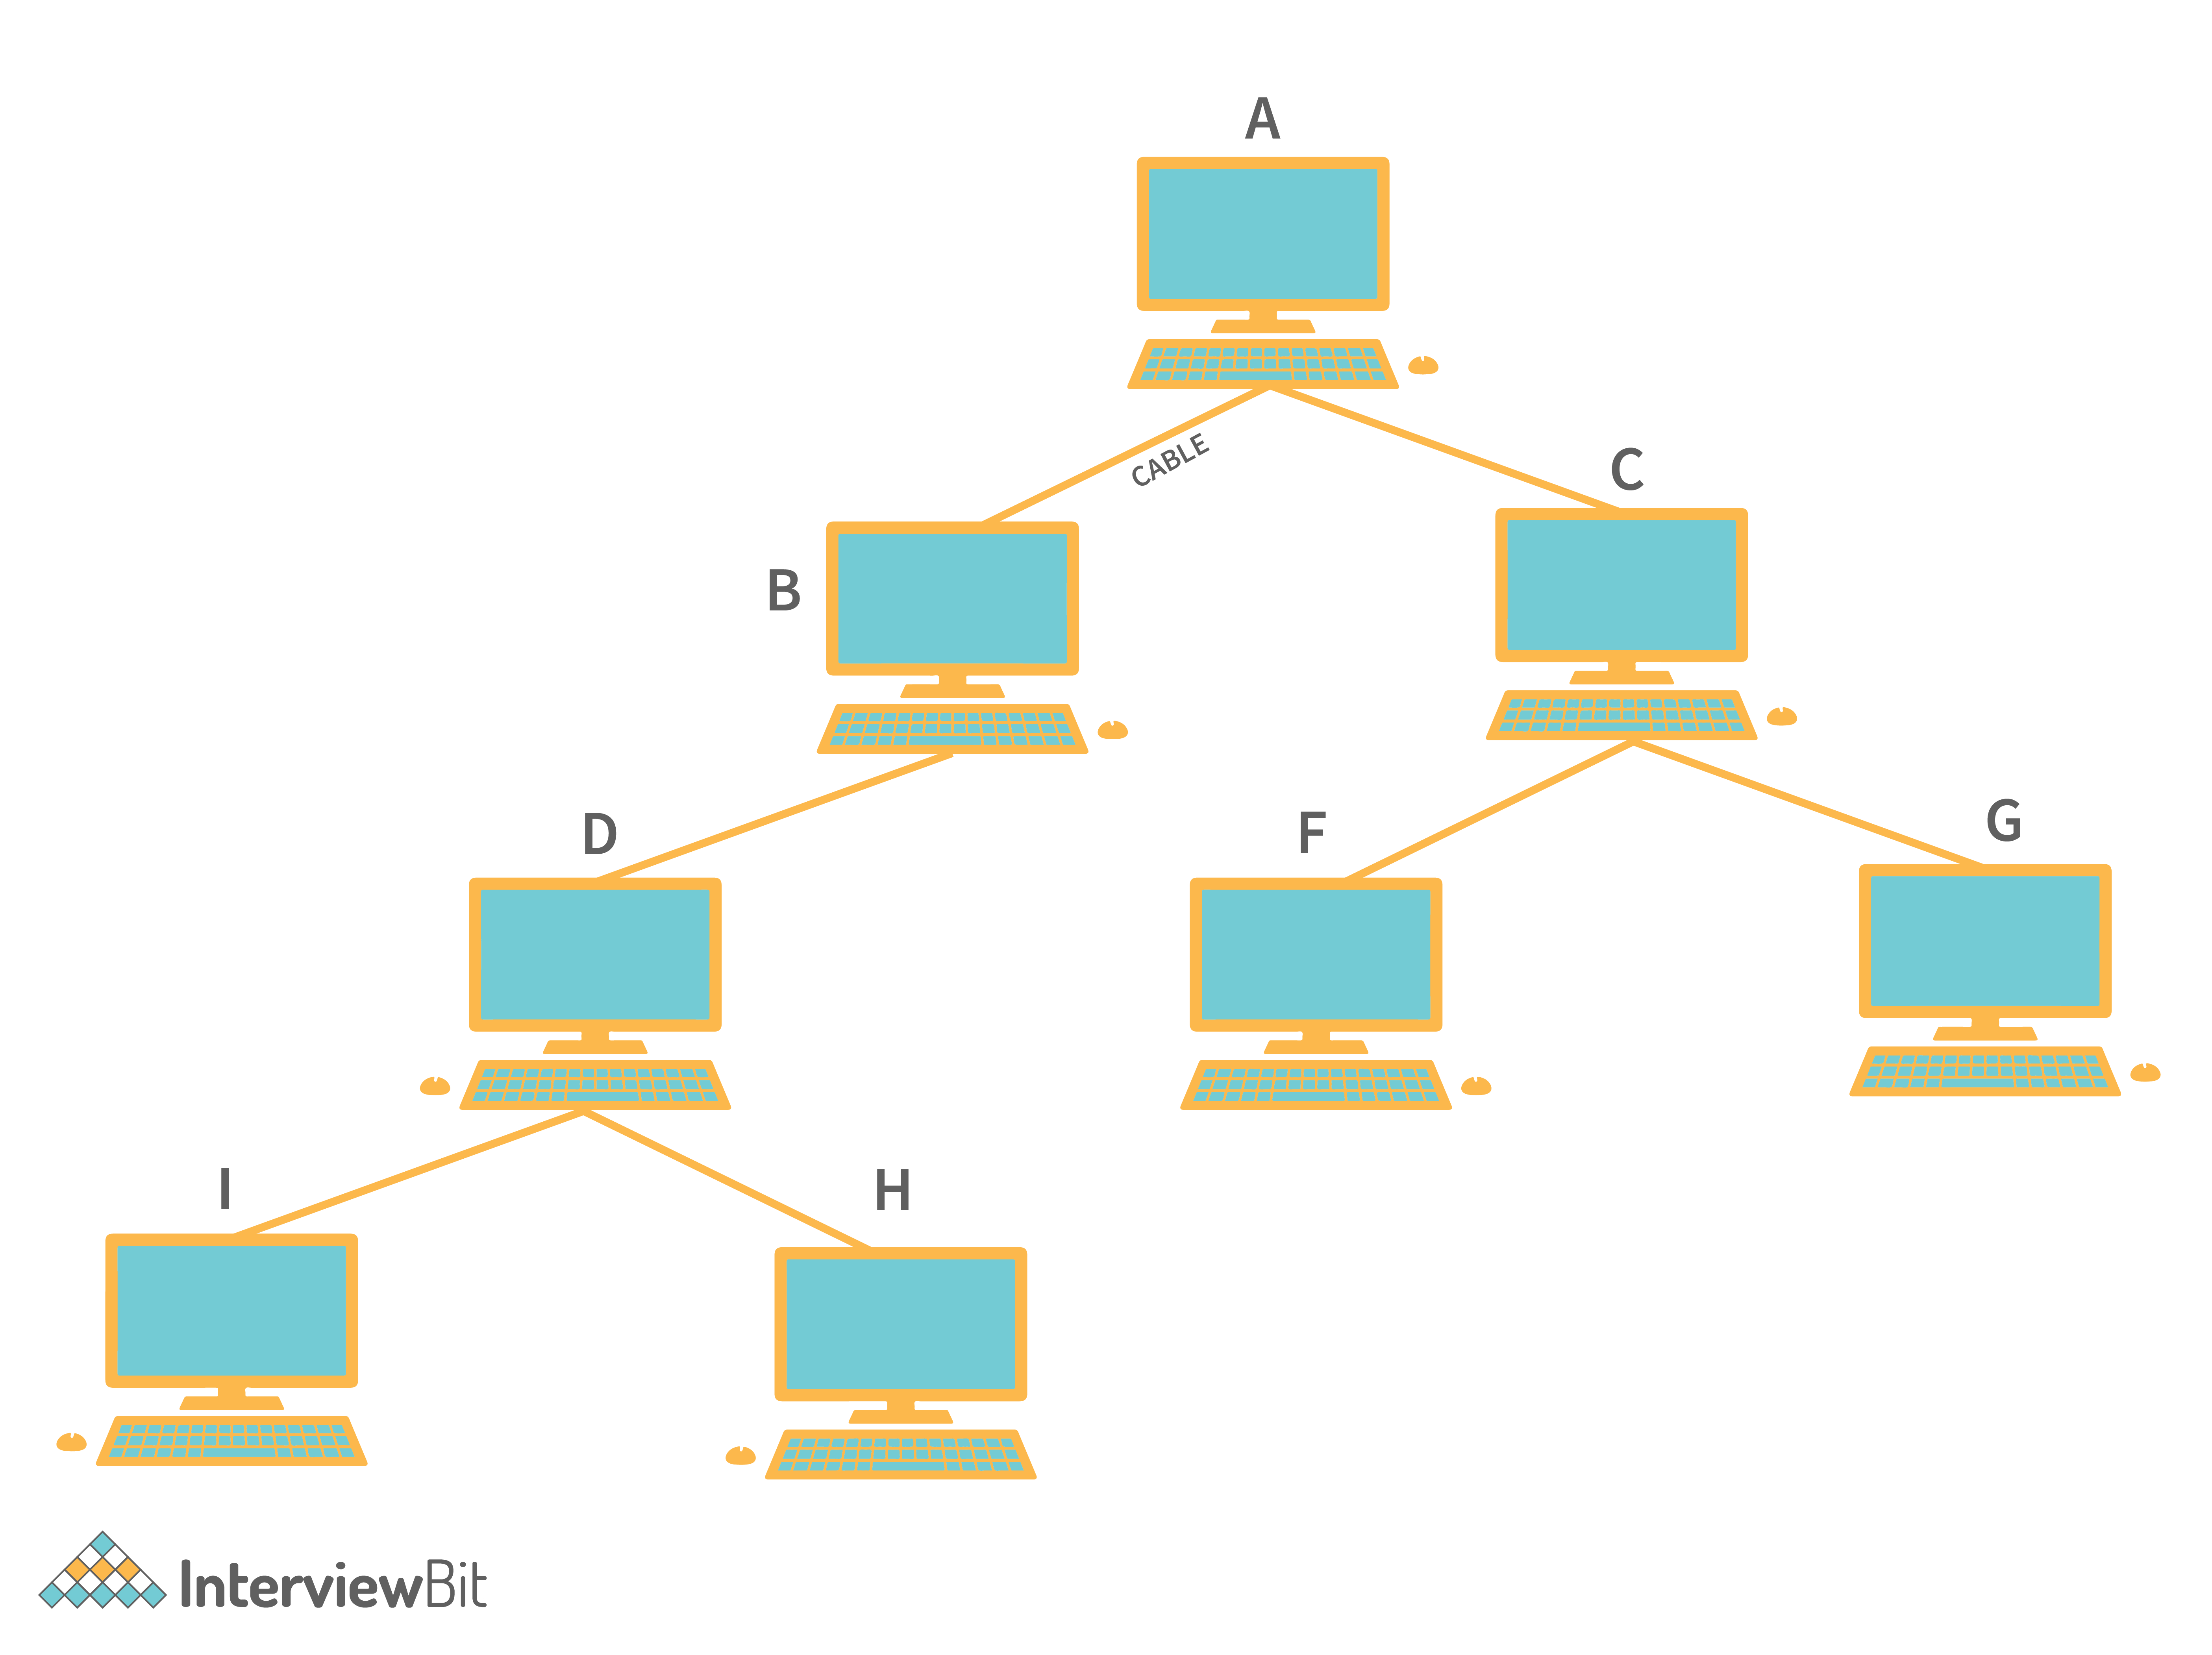 GitHub - JefGrailet/treenet: TreeNET is a subnet-based topology